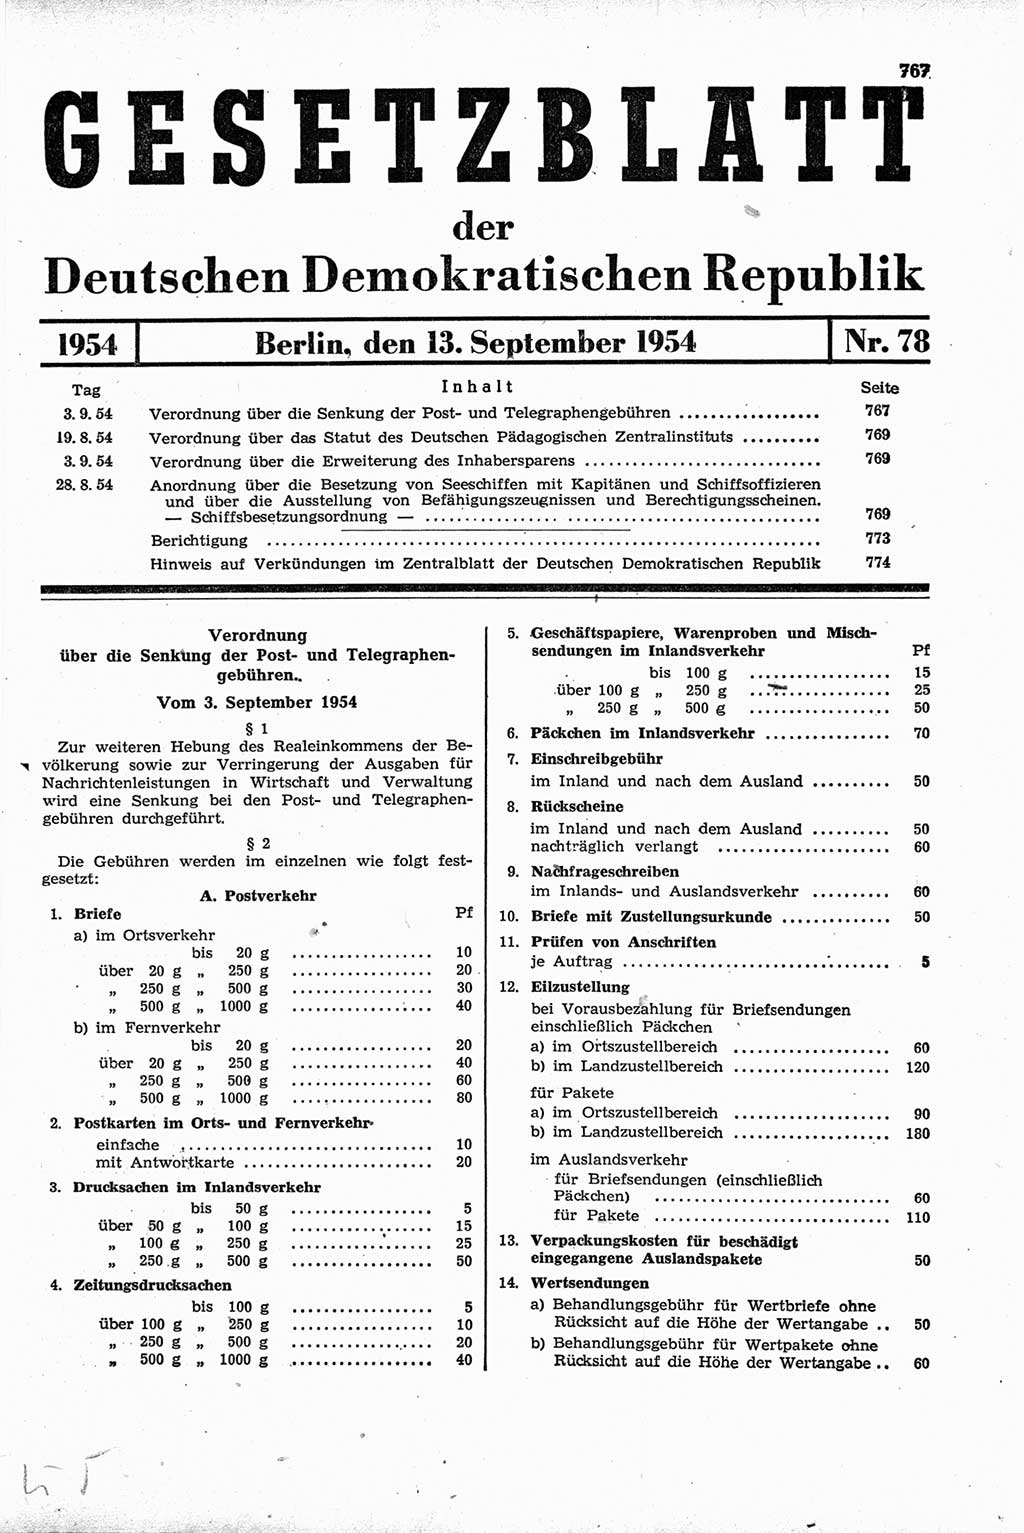 Gesetzblatt (GBl.) der Deutschen Demokratischen Republik (DDR) 1954, Seite 767 (GBl. DDR 1954, S. 767)